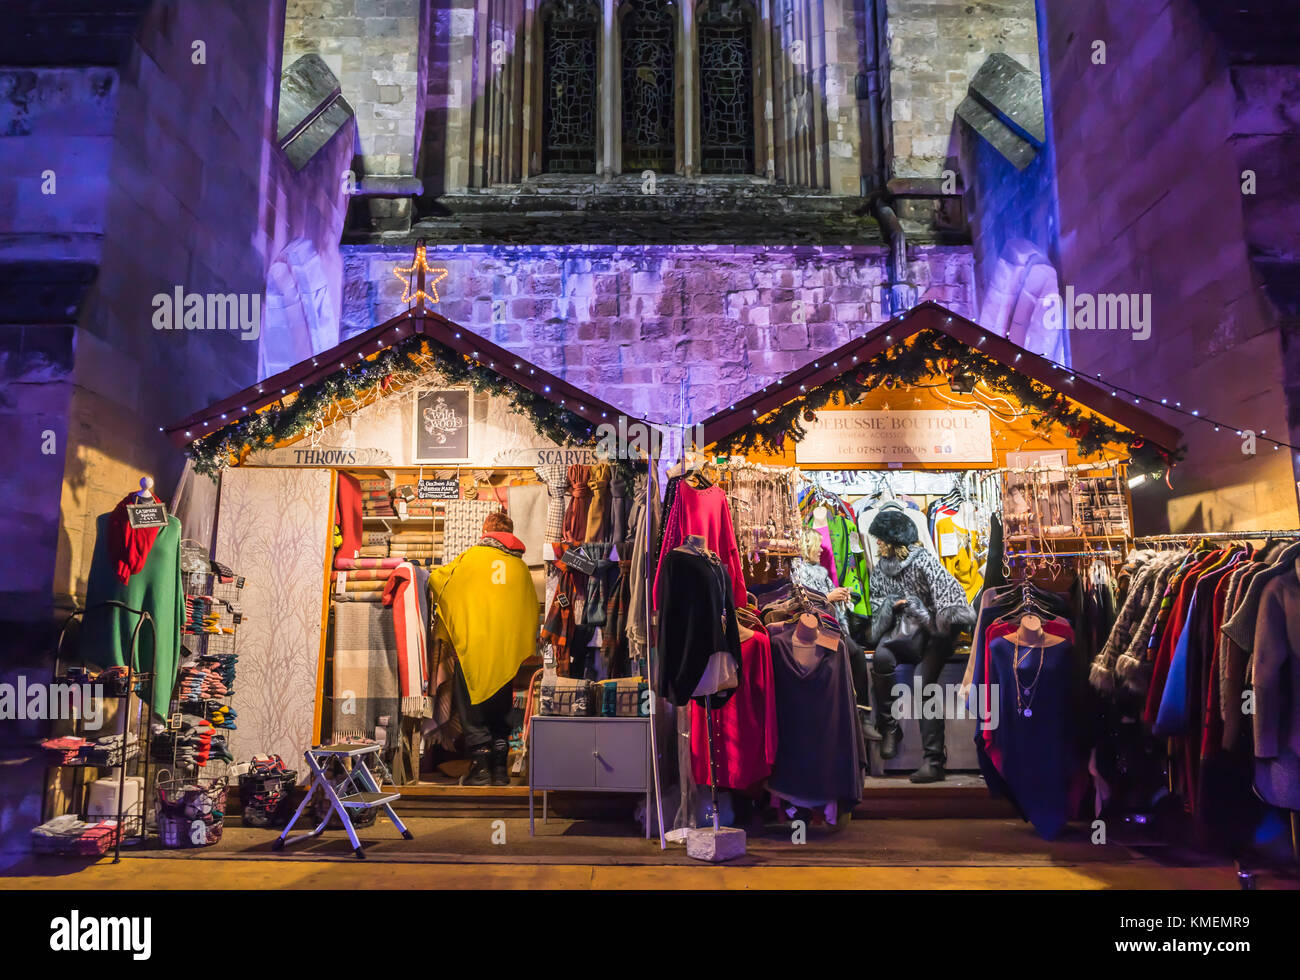 Des étals colorés dynamiques avec l'allumé la cathédrale de Winchester en arrière-plan à la Winchester Marché de Noël 2017, Winchester, England, UK Banque D'Images